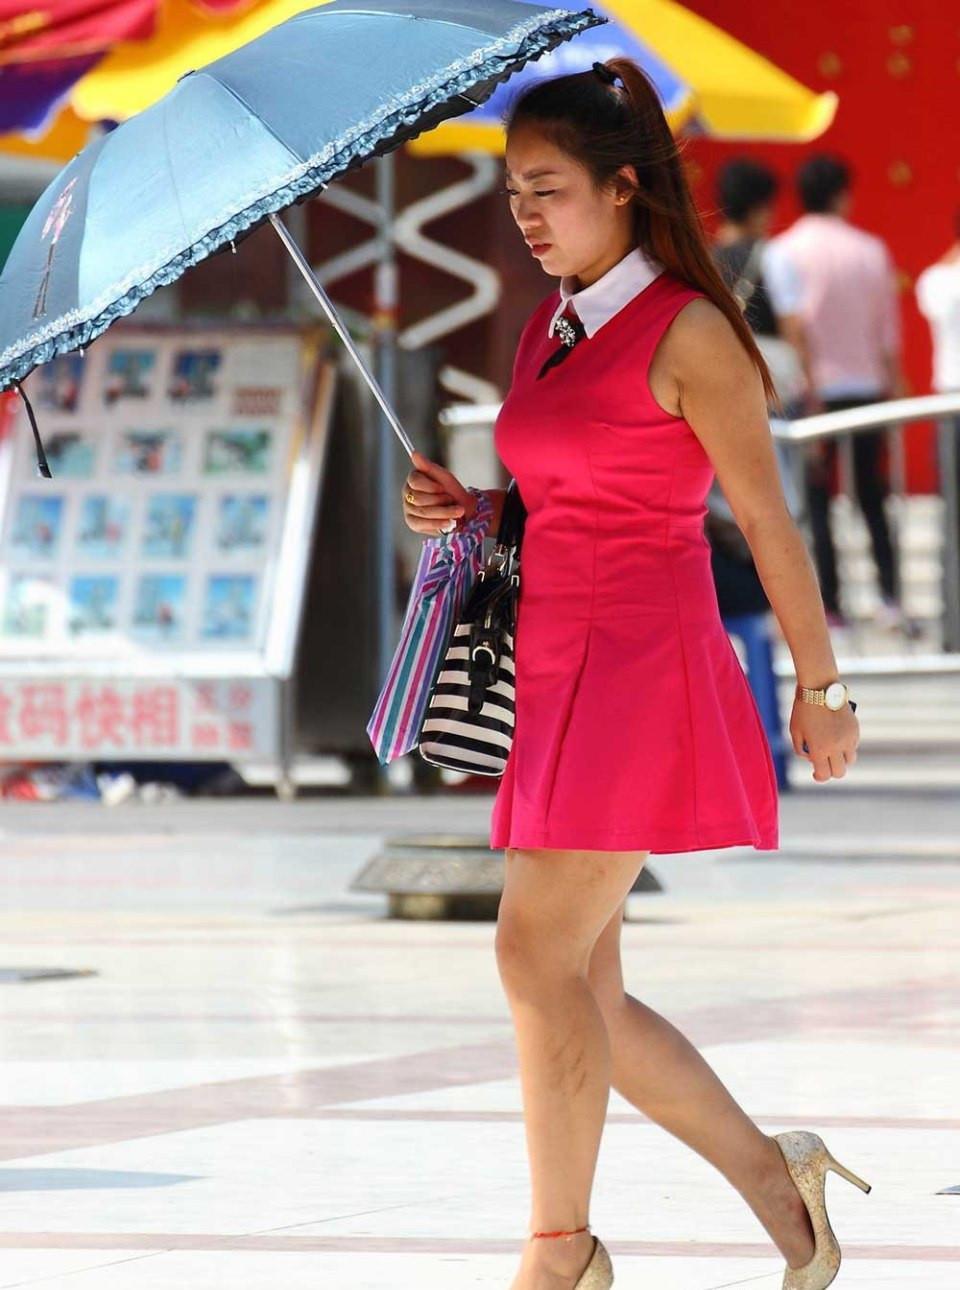 打遮阳伞的红色短裙美女穿着金色高跟甚是诱惑,打遮阳伞的红色短裙美女穿着金色高跟甚是诱惑